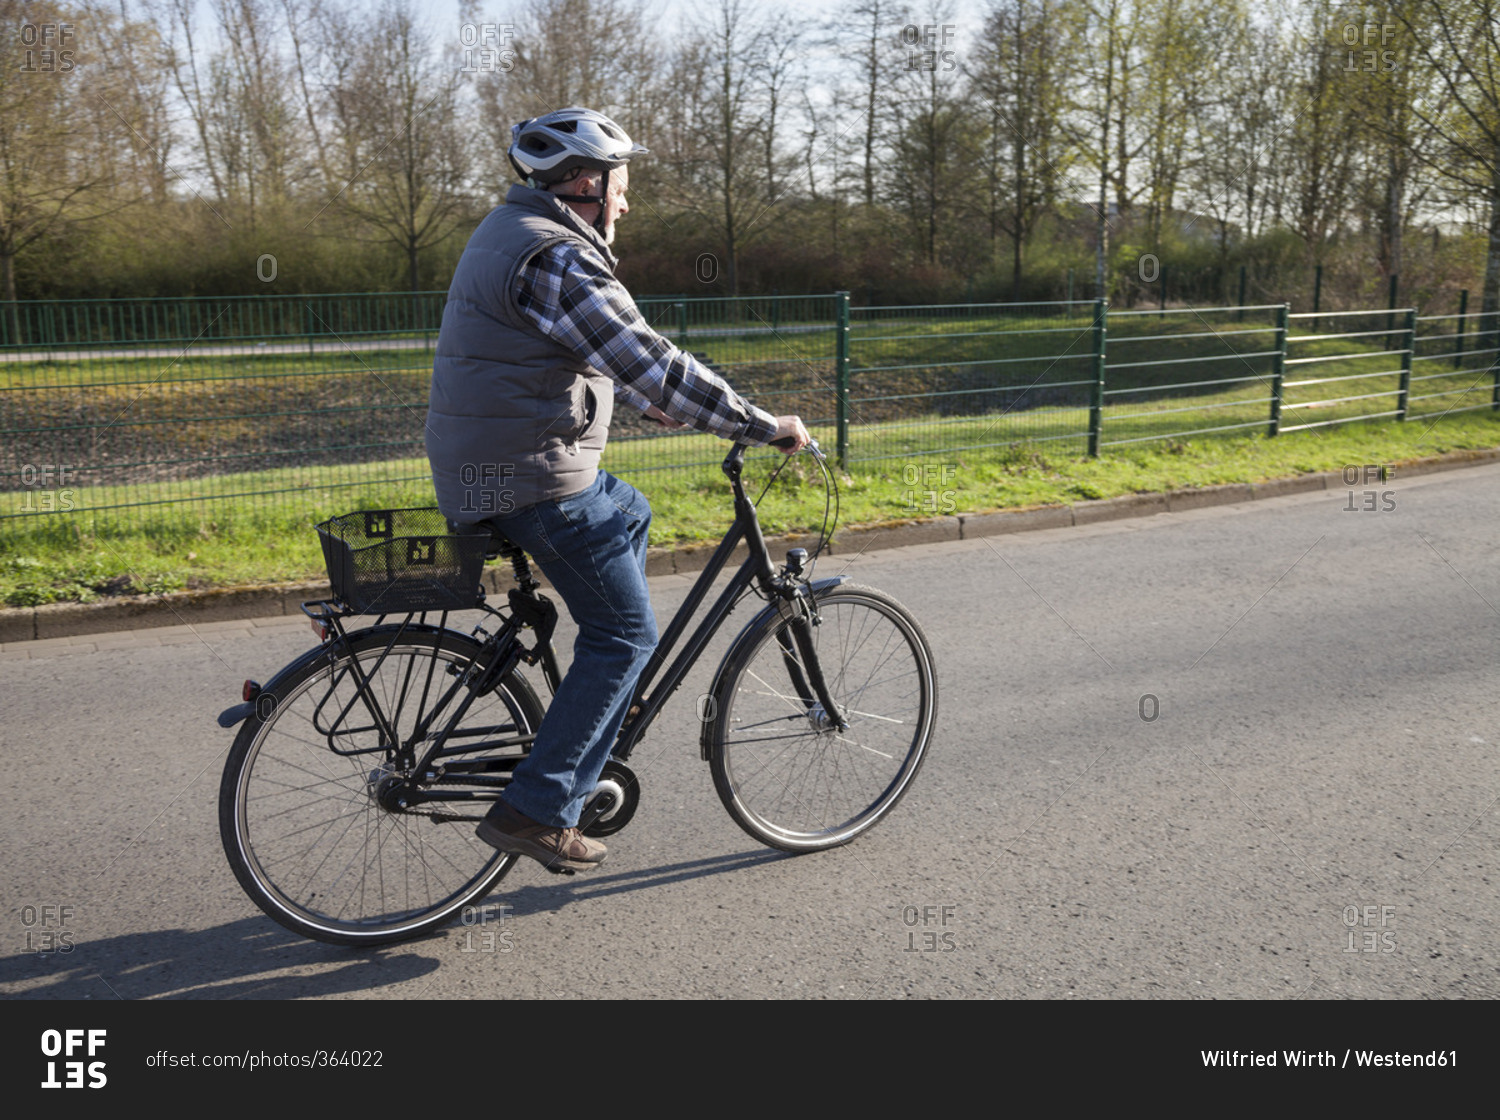 Senior man riding bicycle